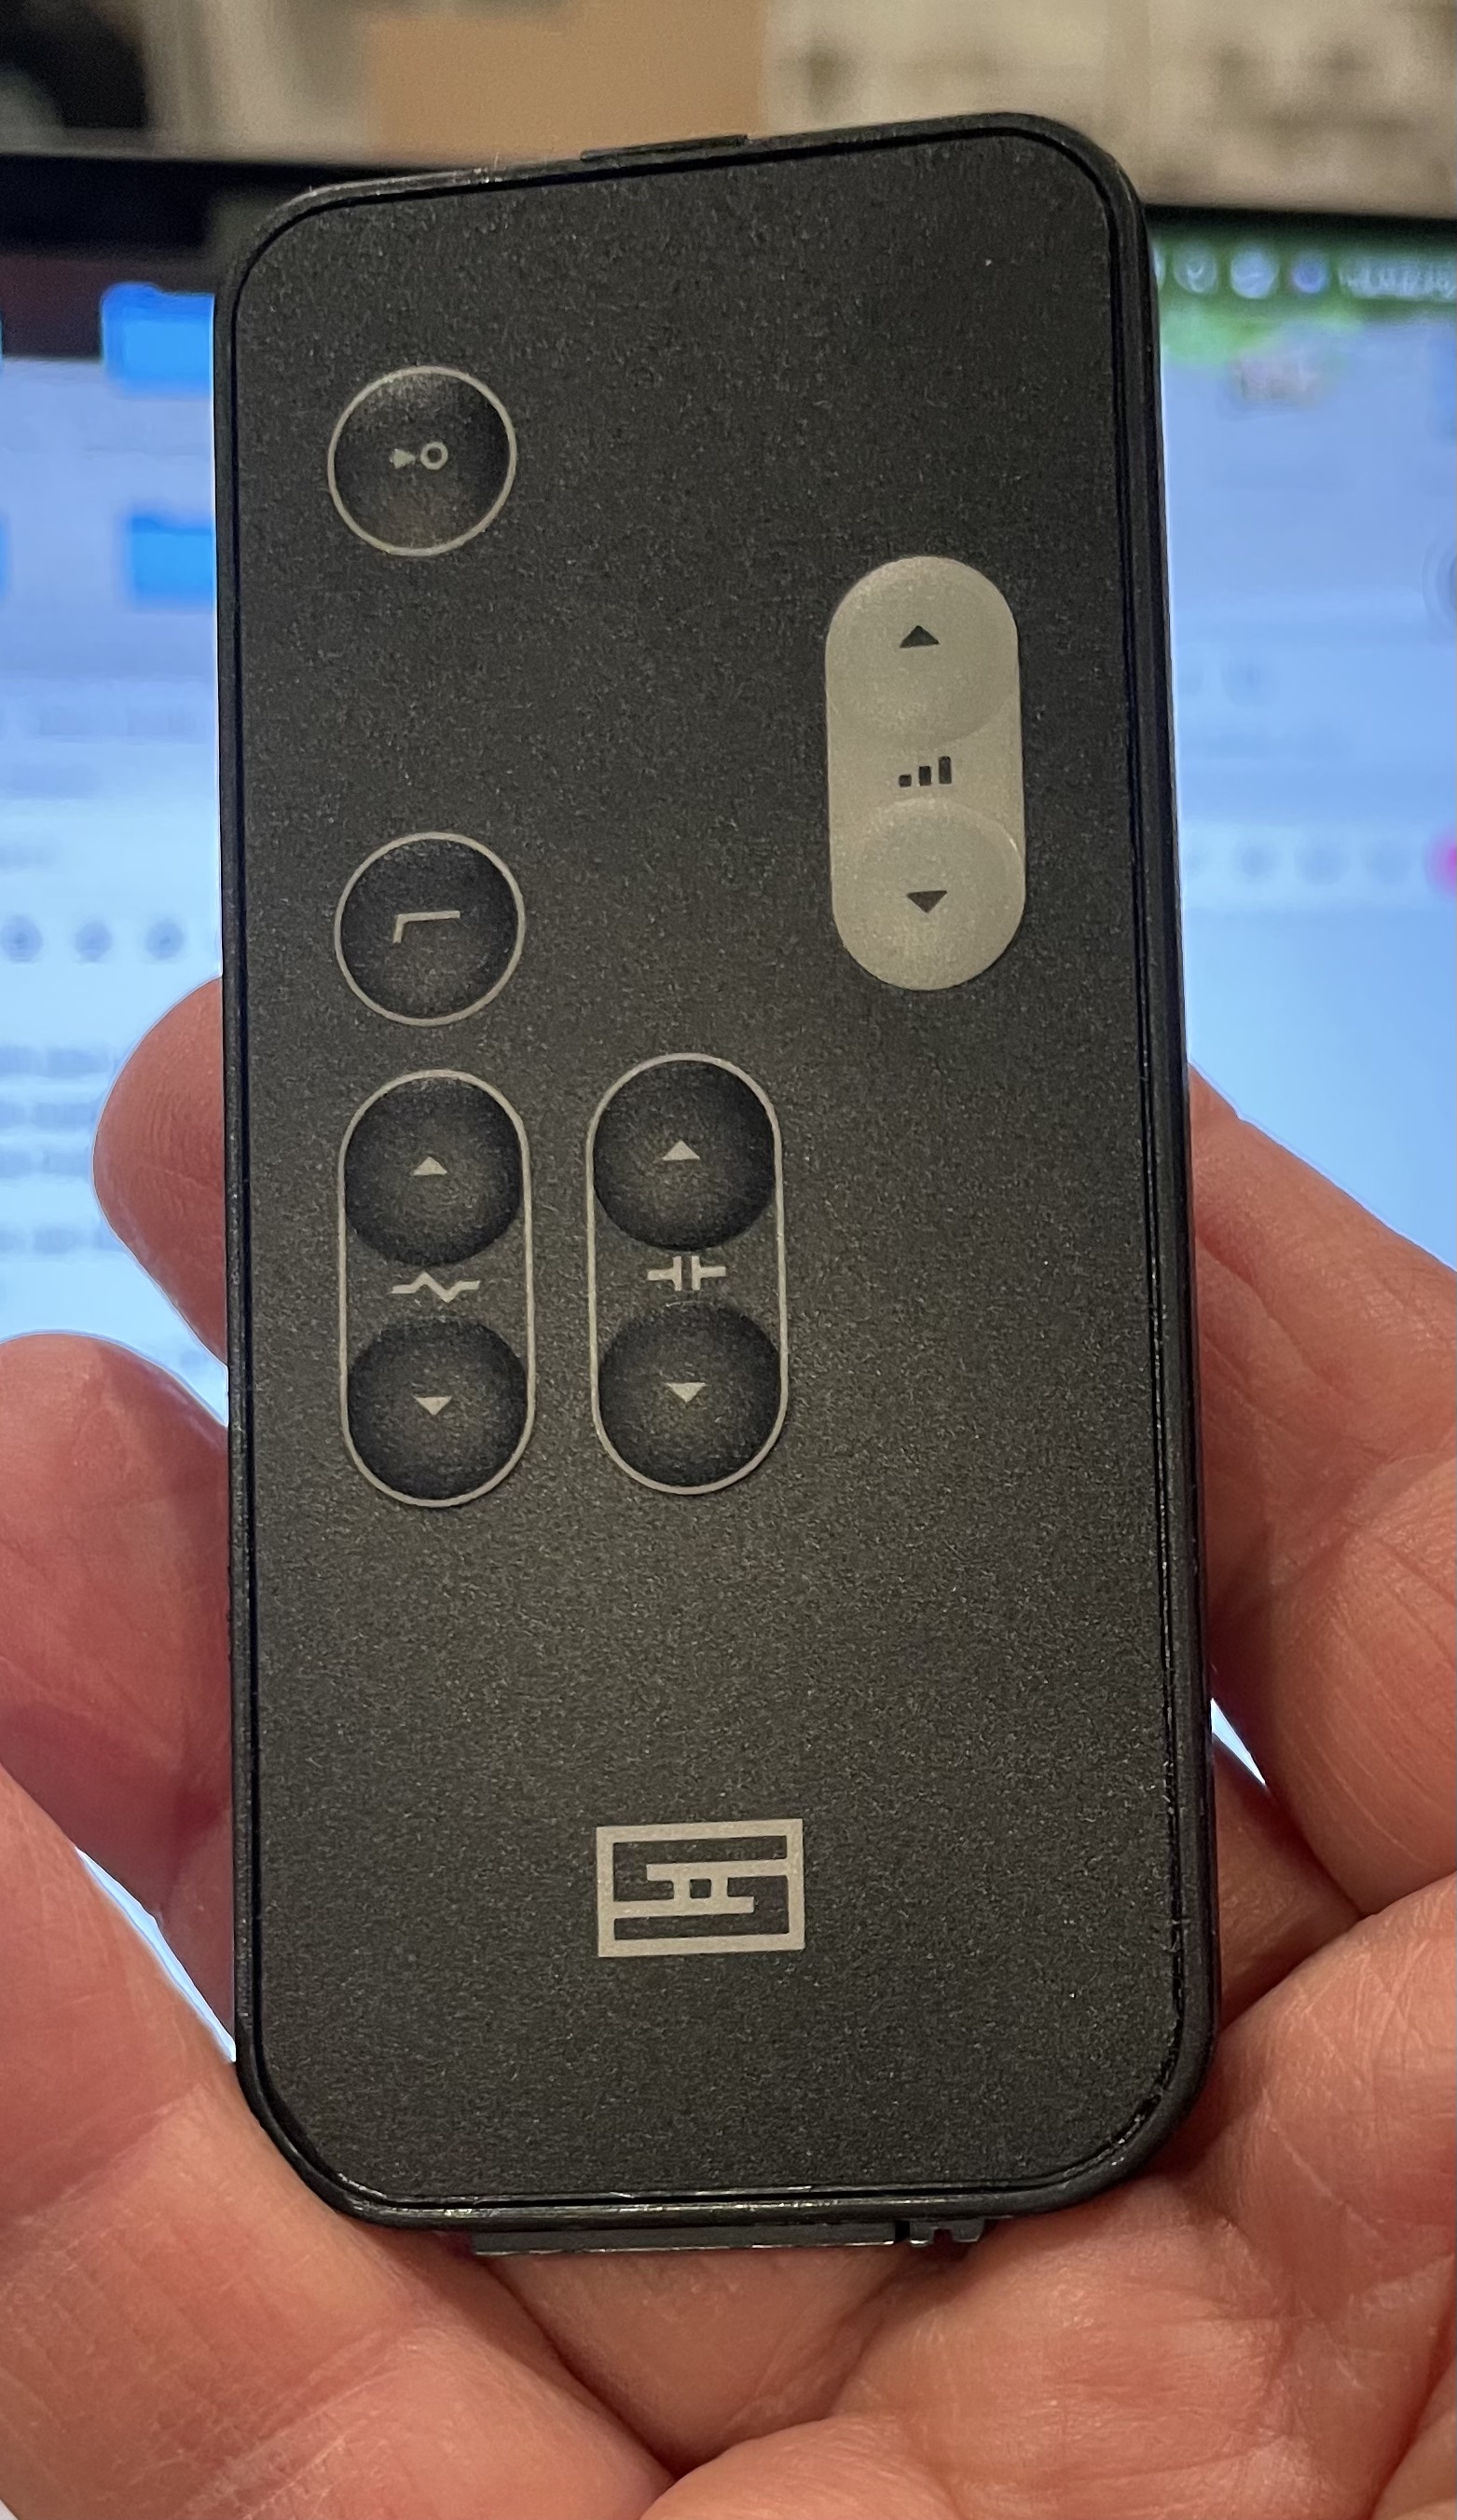 Schiit Skoll remote control